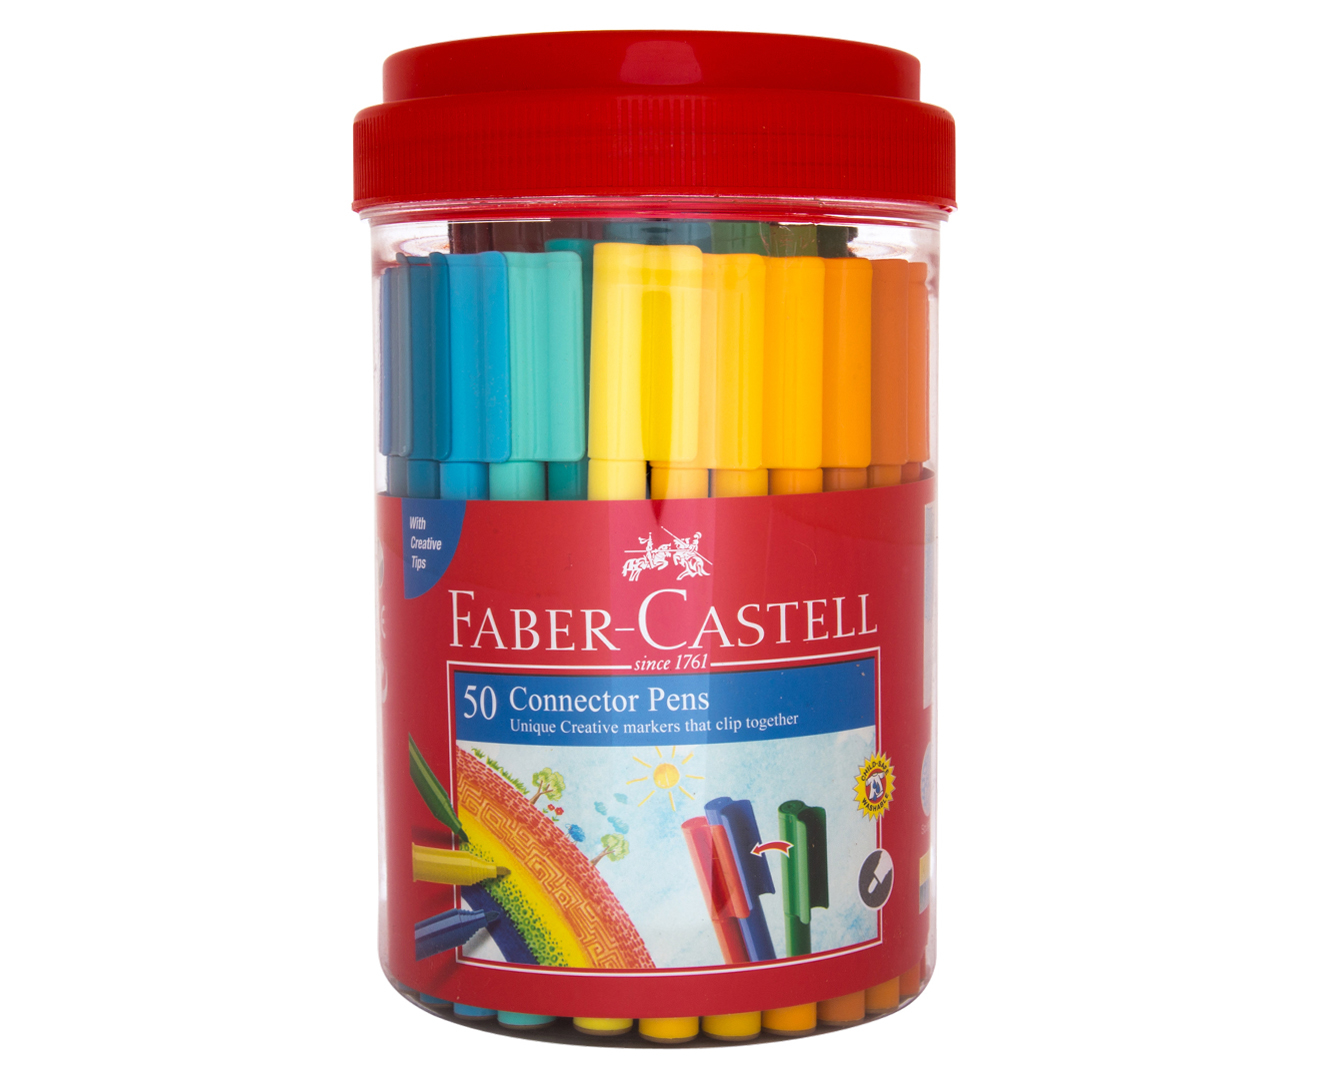 50 Stück Faber-Castell Faber-Castell Connector Pen Set 